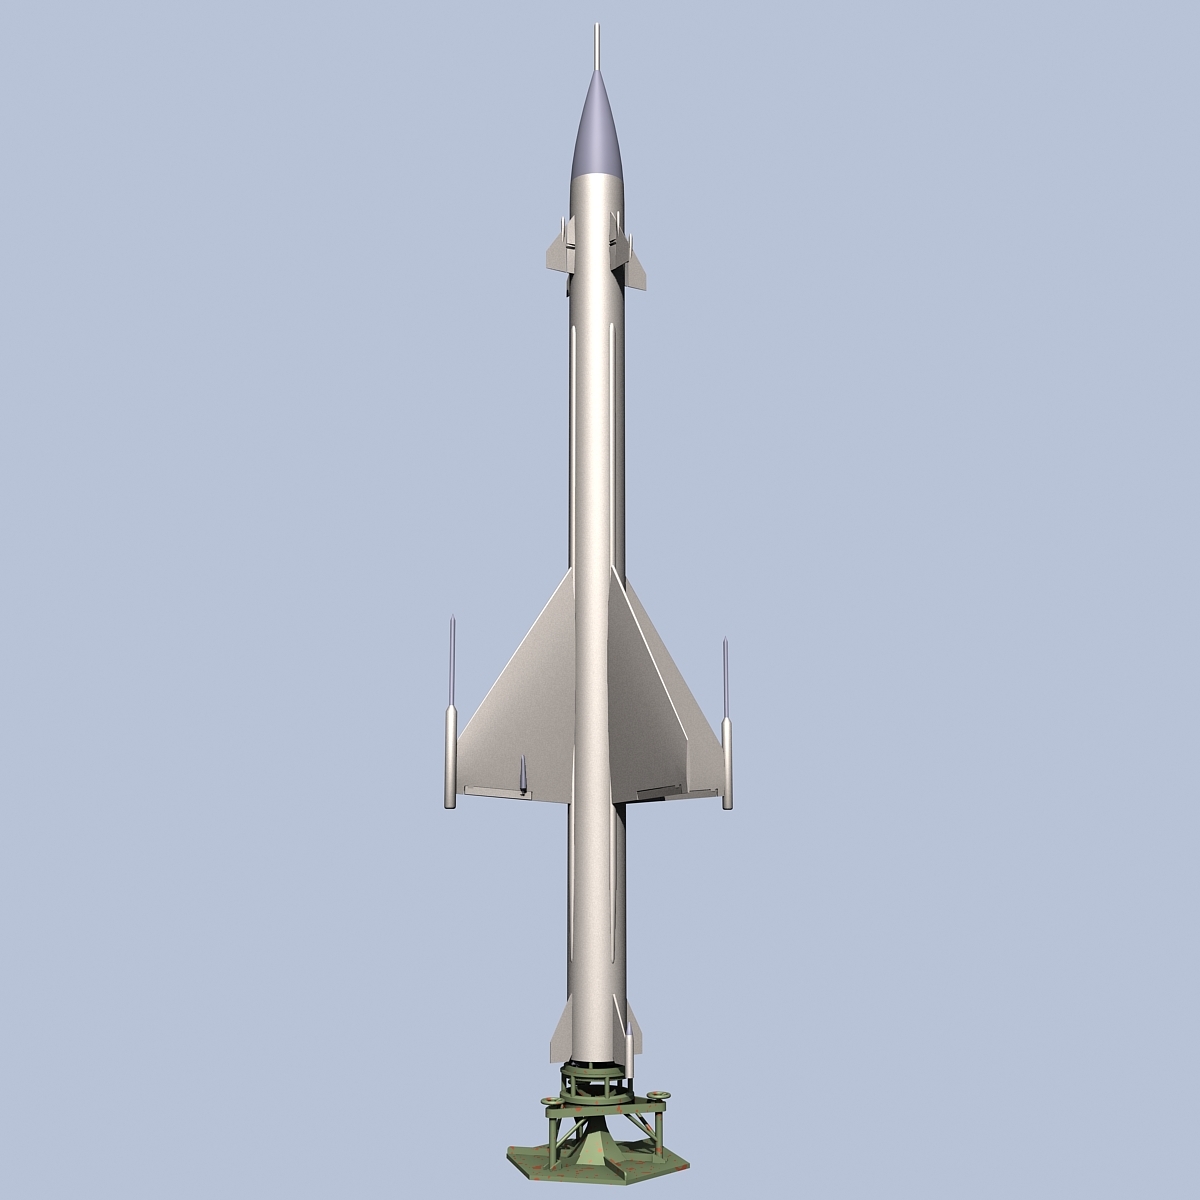 مدل سه بعدی تجهیزات نظامی و جنگی روسی - 8